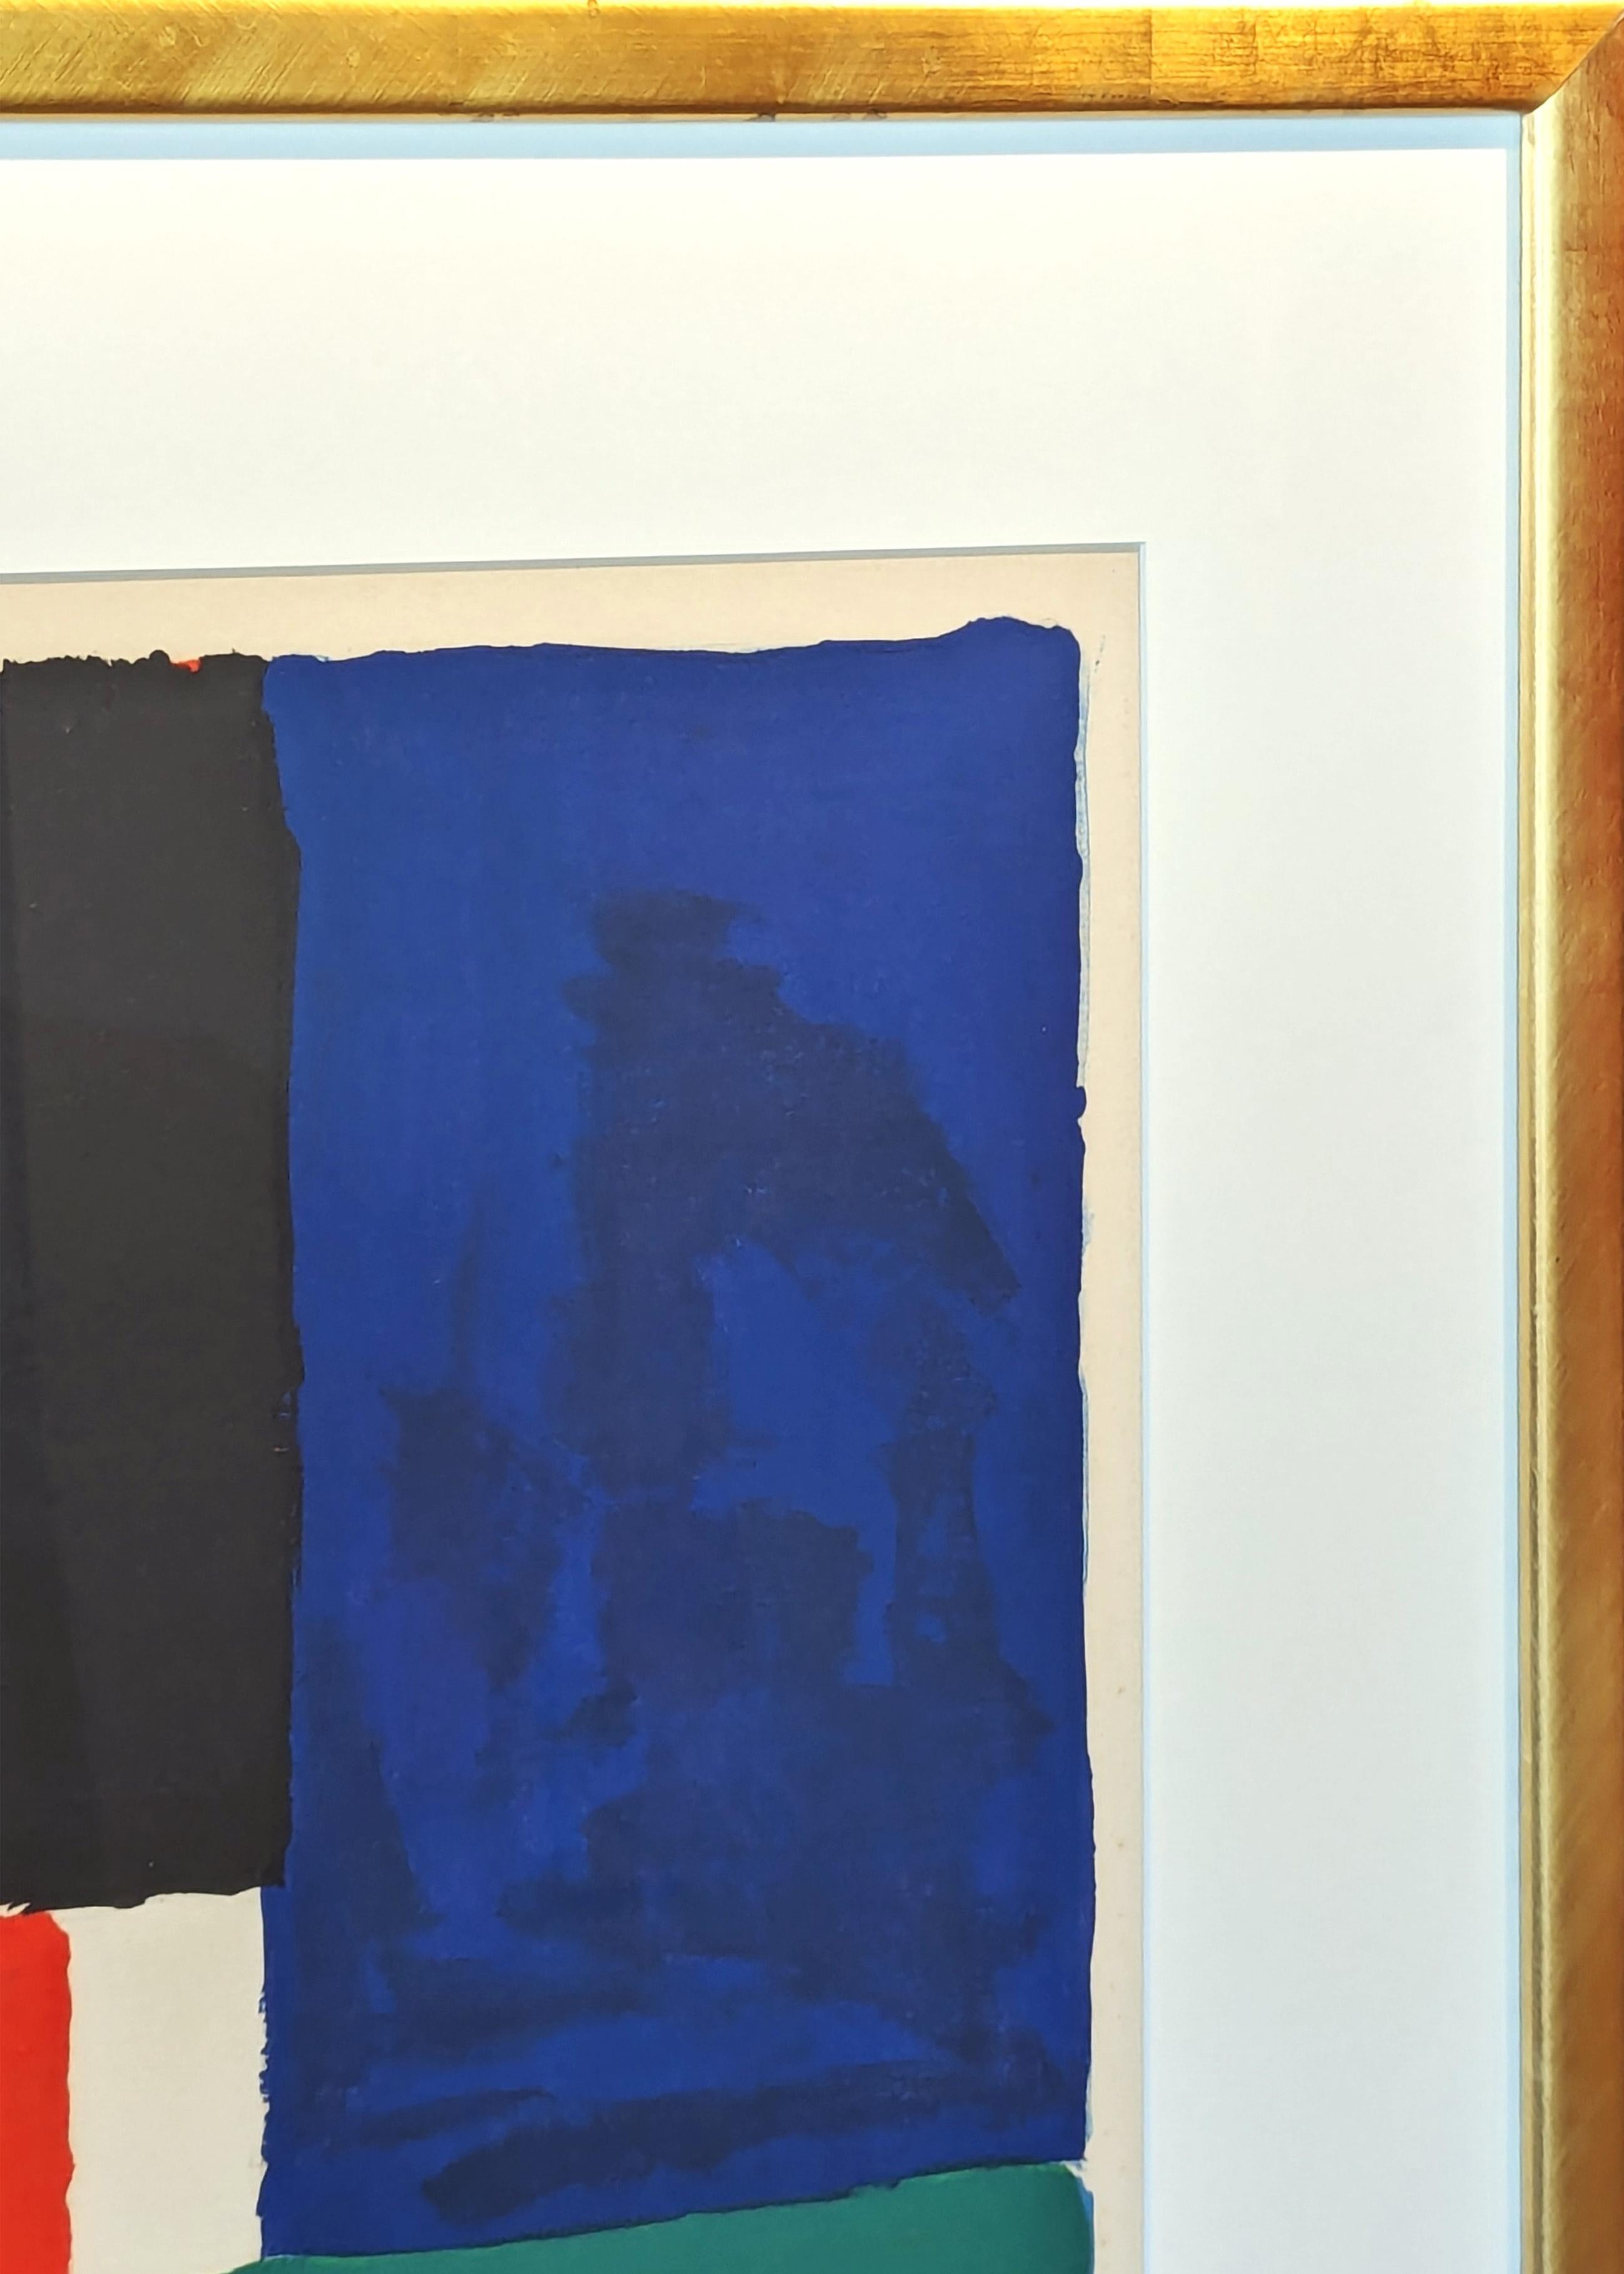 Moderne, farbenfrohe, geometrische, abstrakte Lithografie der frühen Künstlerin Sonia Delaunay. Zusammen mit ihrem Ehemann Robert Delaunay trug Sonia zur Entstehung der künstlerischen Bewegung des Orphismus bei, einer eher lyrischen, farbbetonten